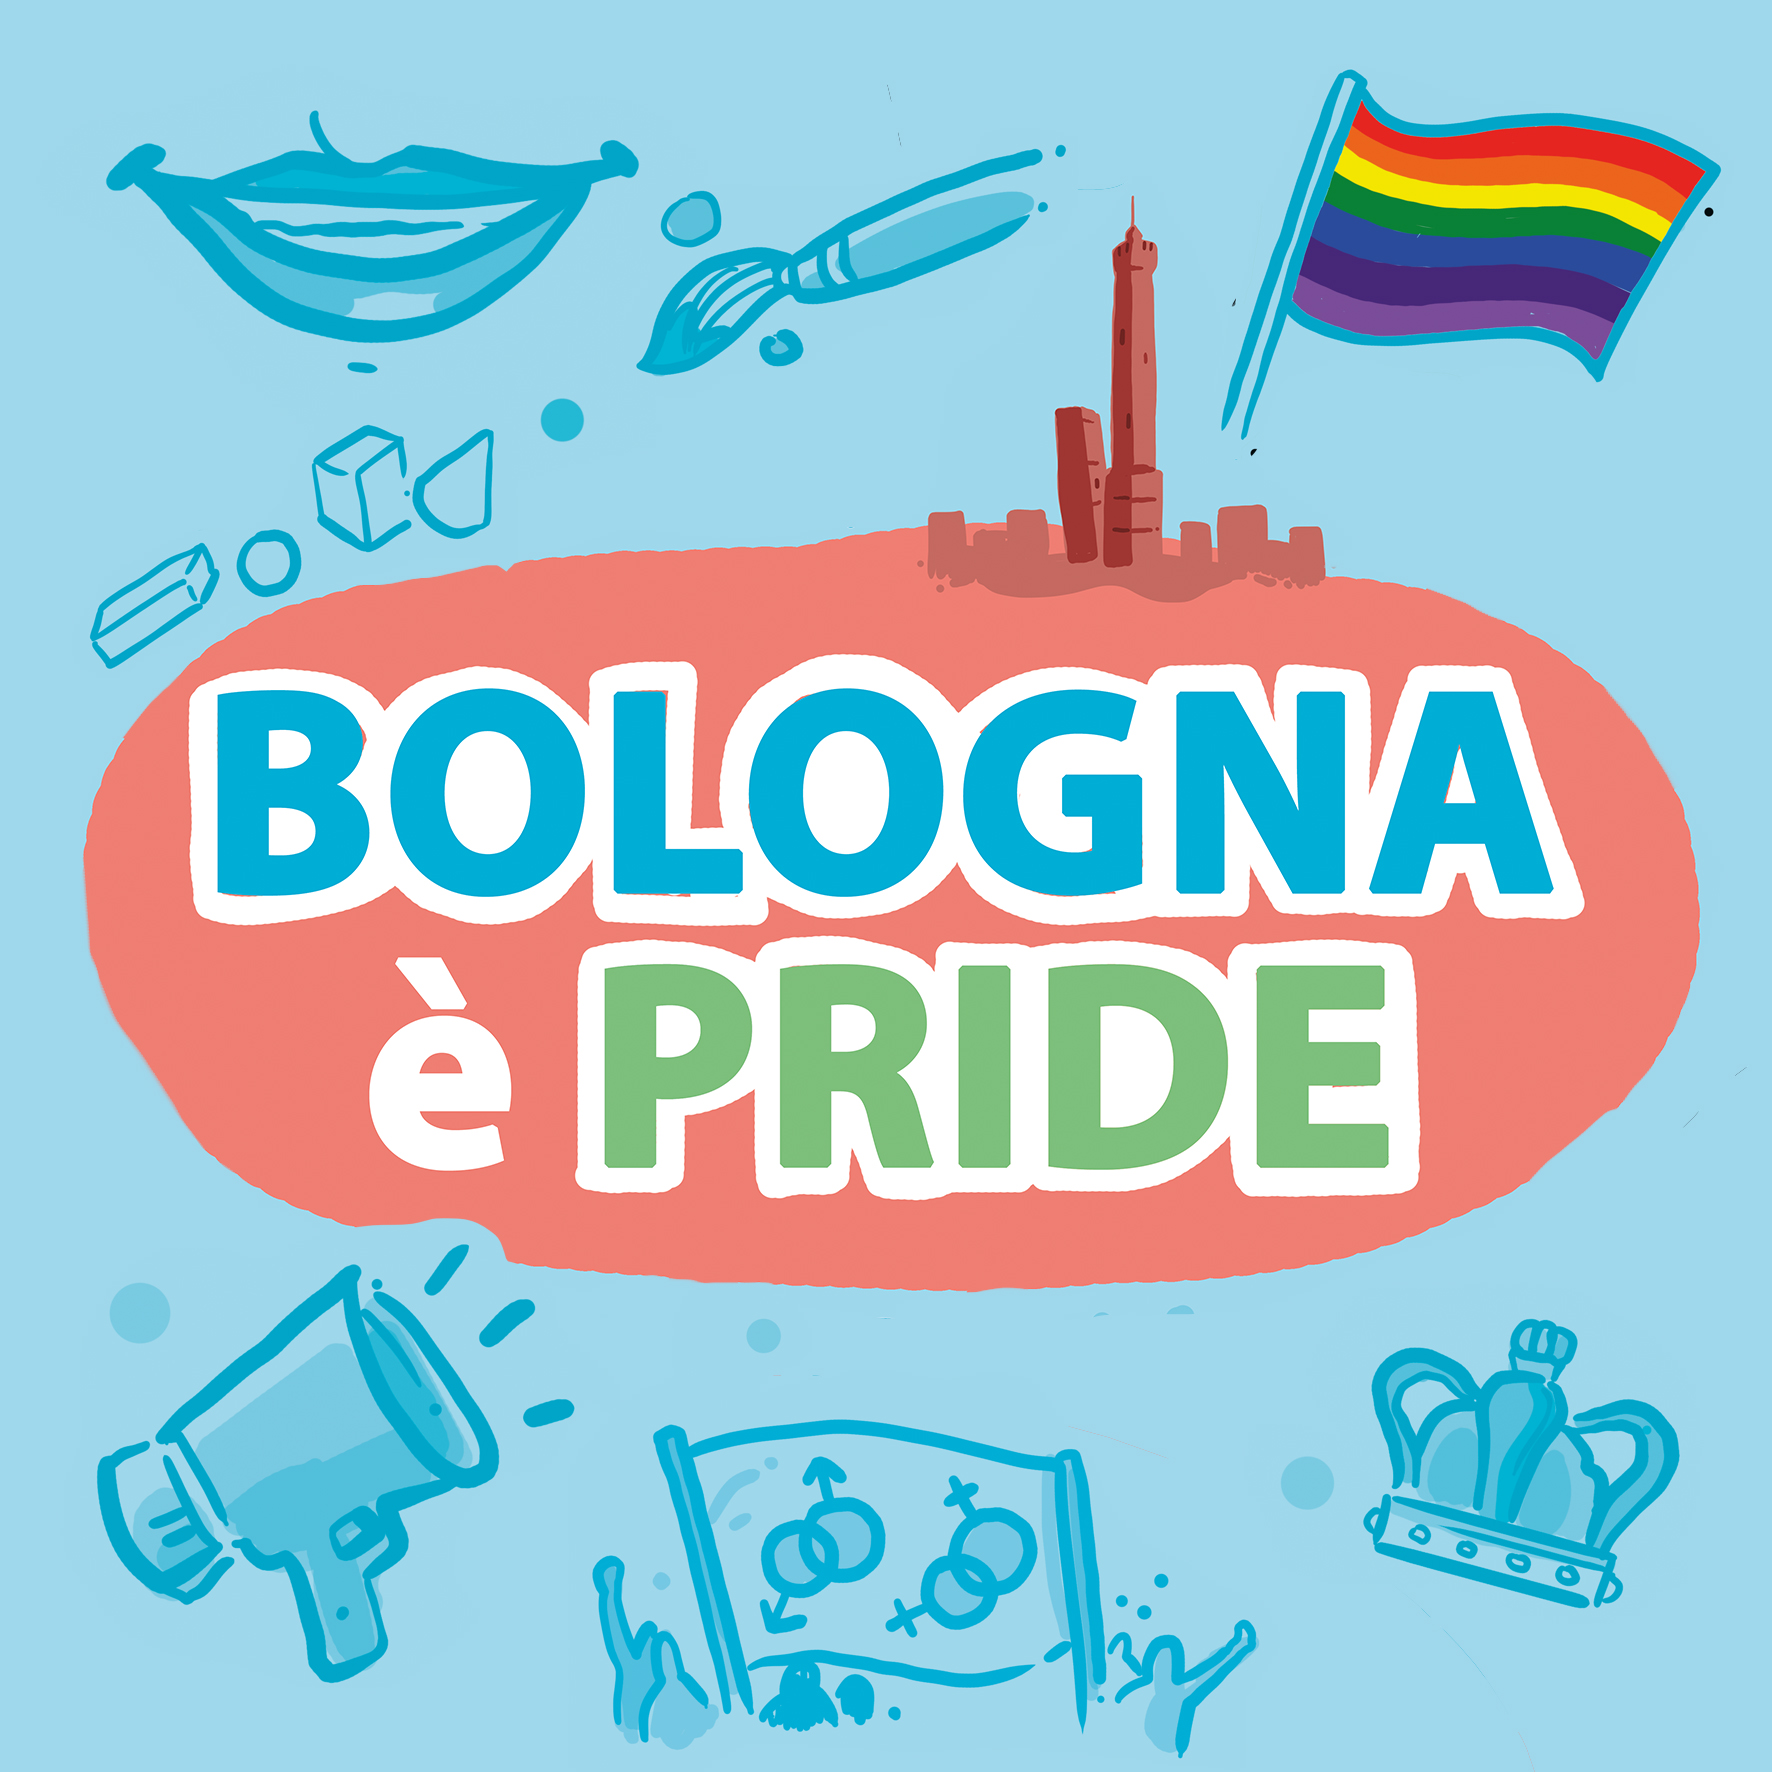 Bologna pride